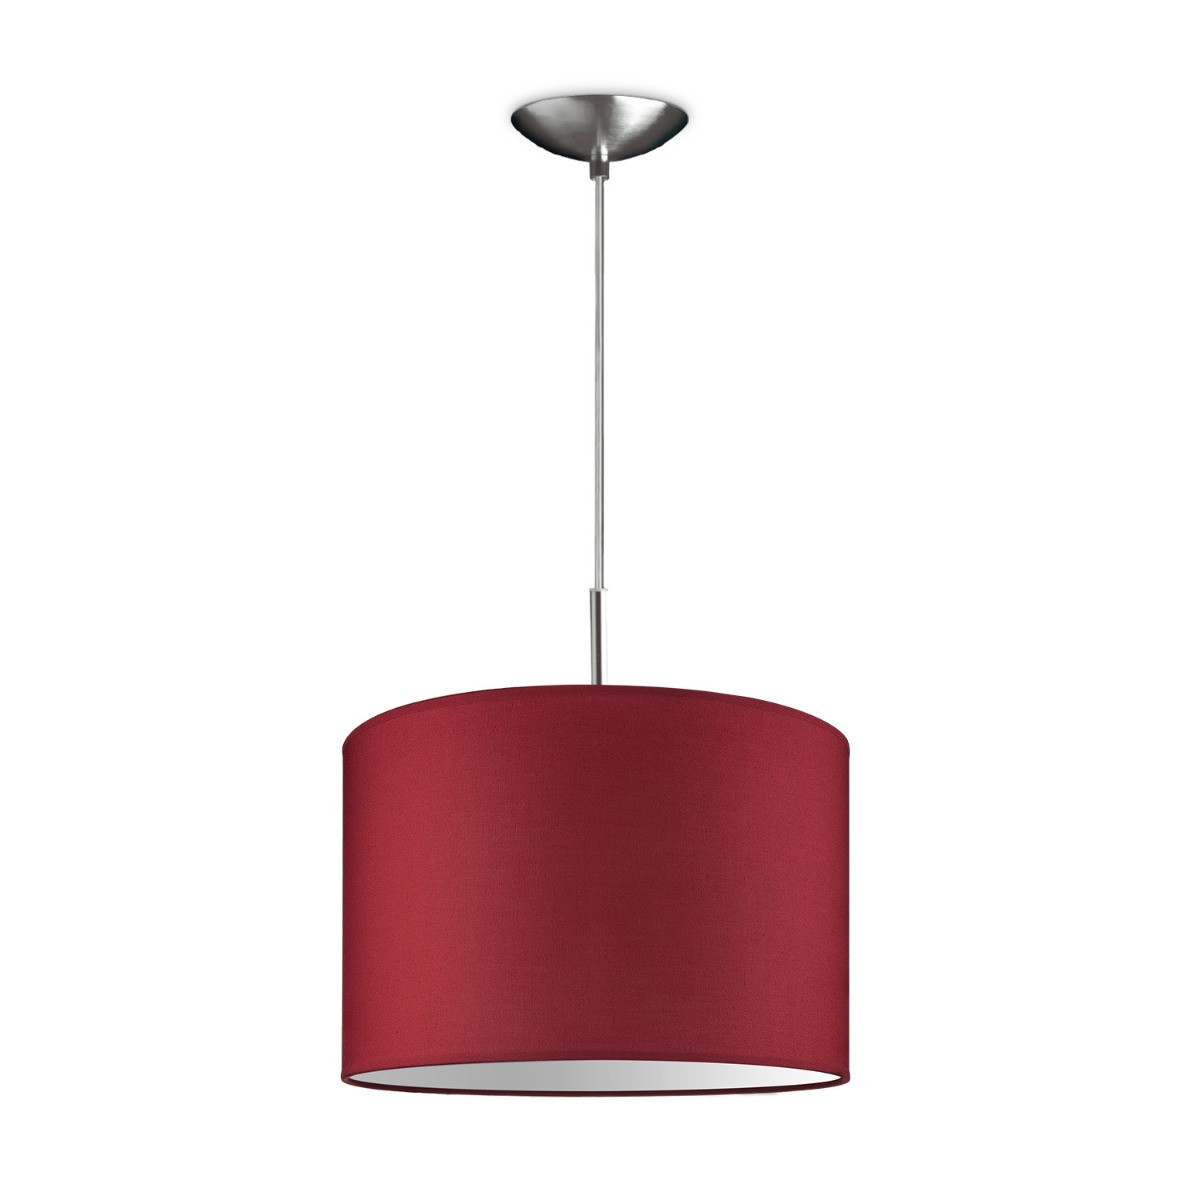 Light depot - hanglamp tube deluxe bling Ø 30 cm - rood - Outlet